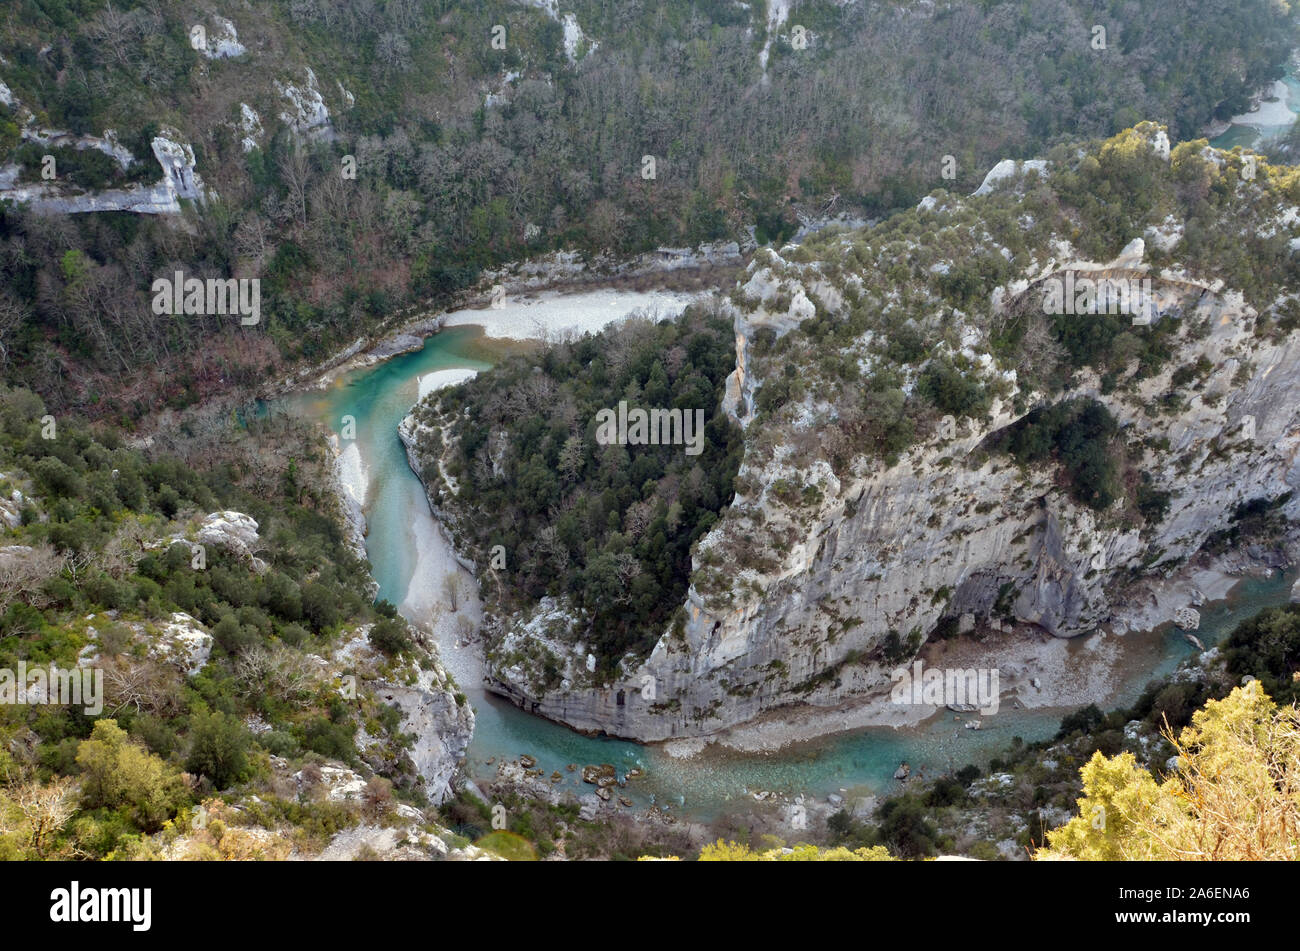 Jonctions des rivières Arturby et Verdon dans les gorges du Verdon. Alpes de Haute Provence France Banque D'Images